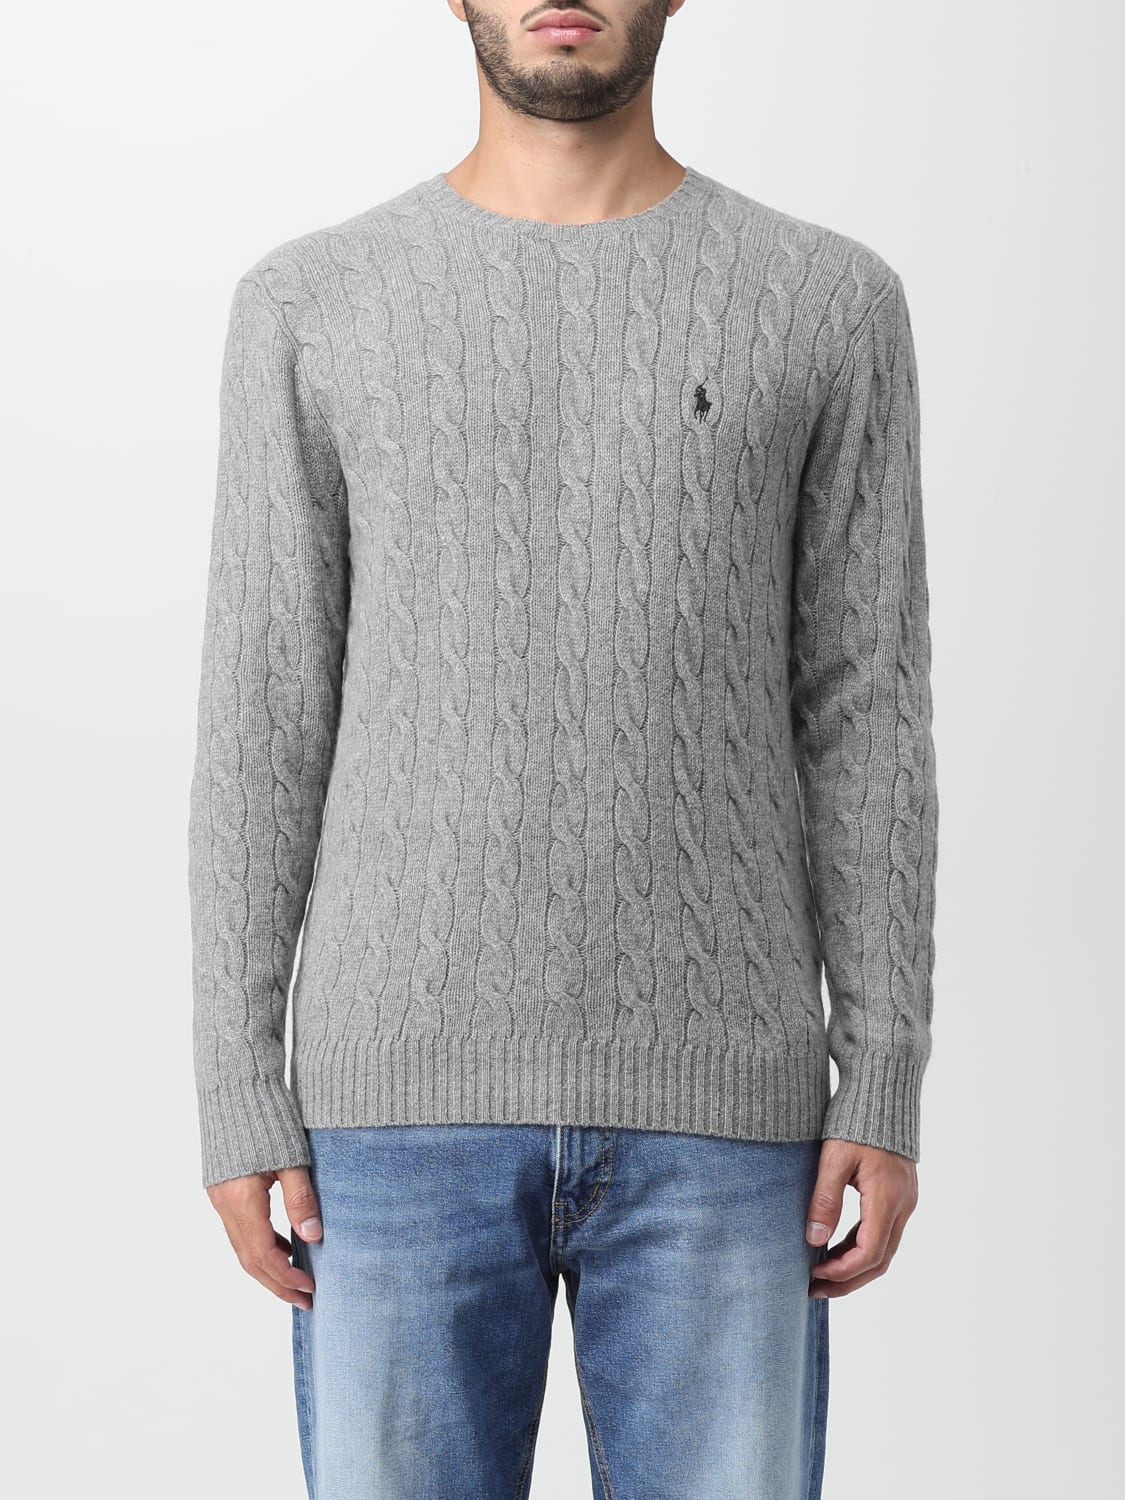 POLO RALPH LAUREN: sweater for man - Grey 1 | Polo Ralph Lauren sweater ...